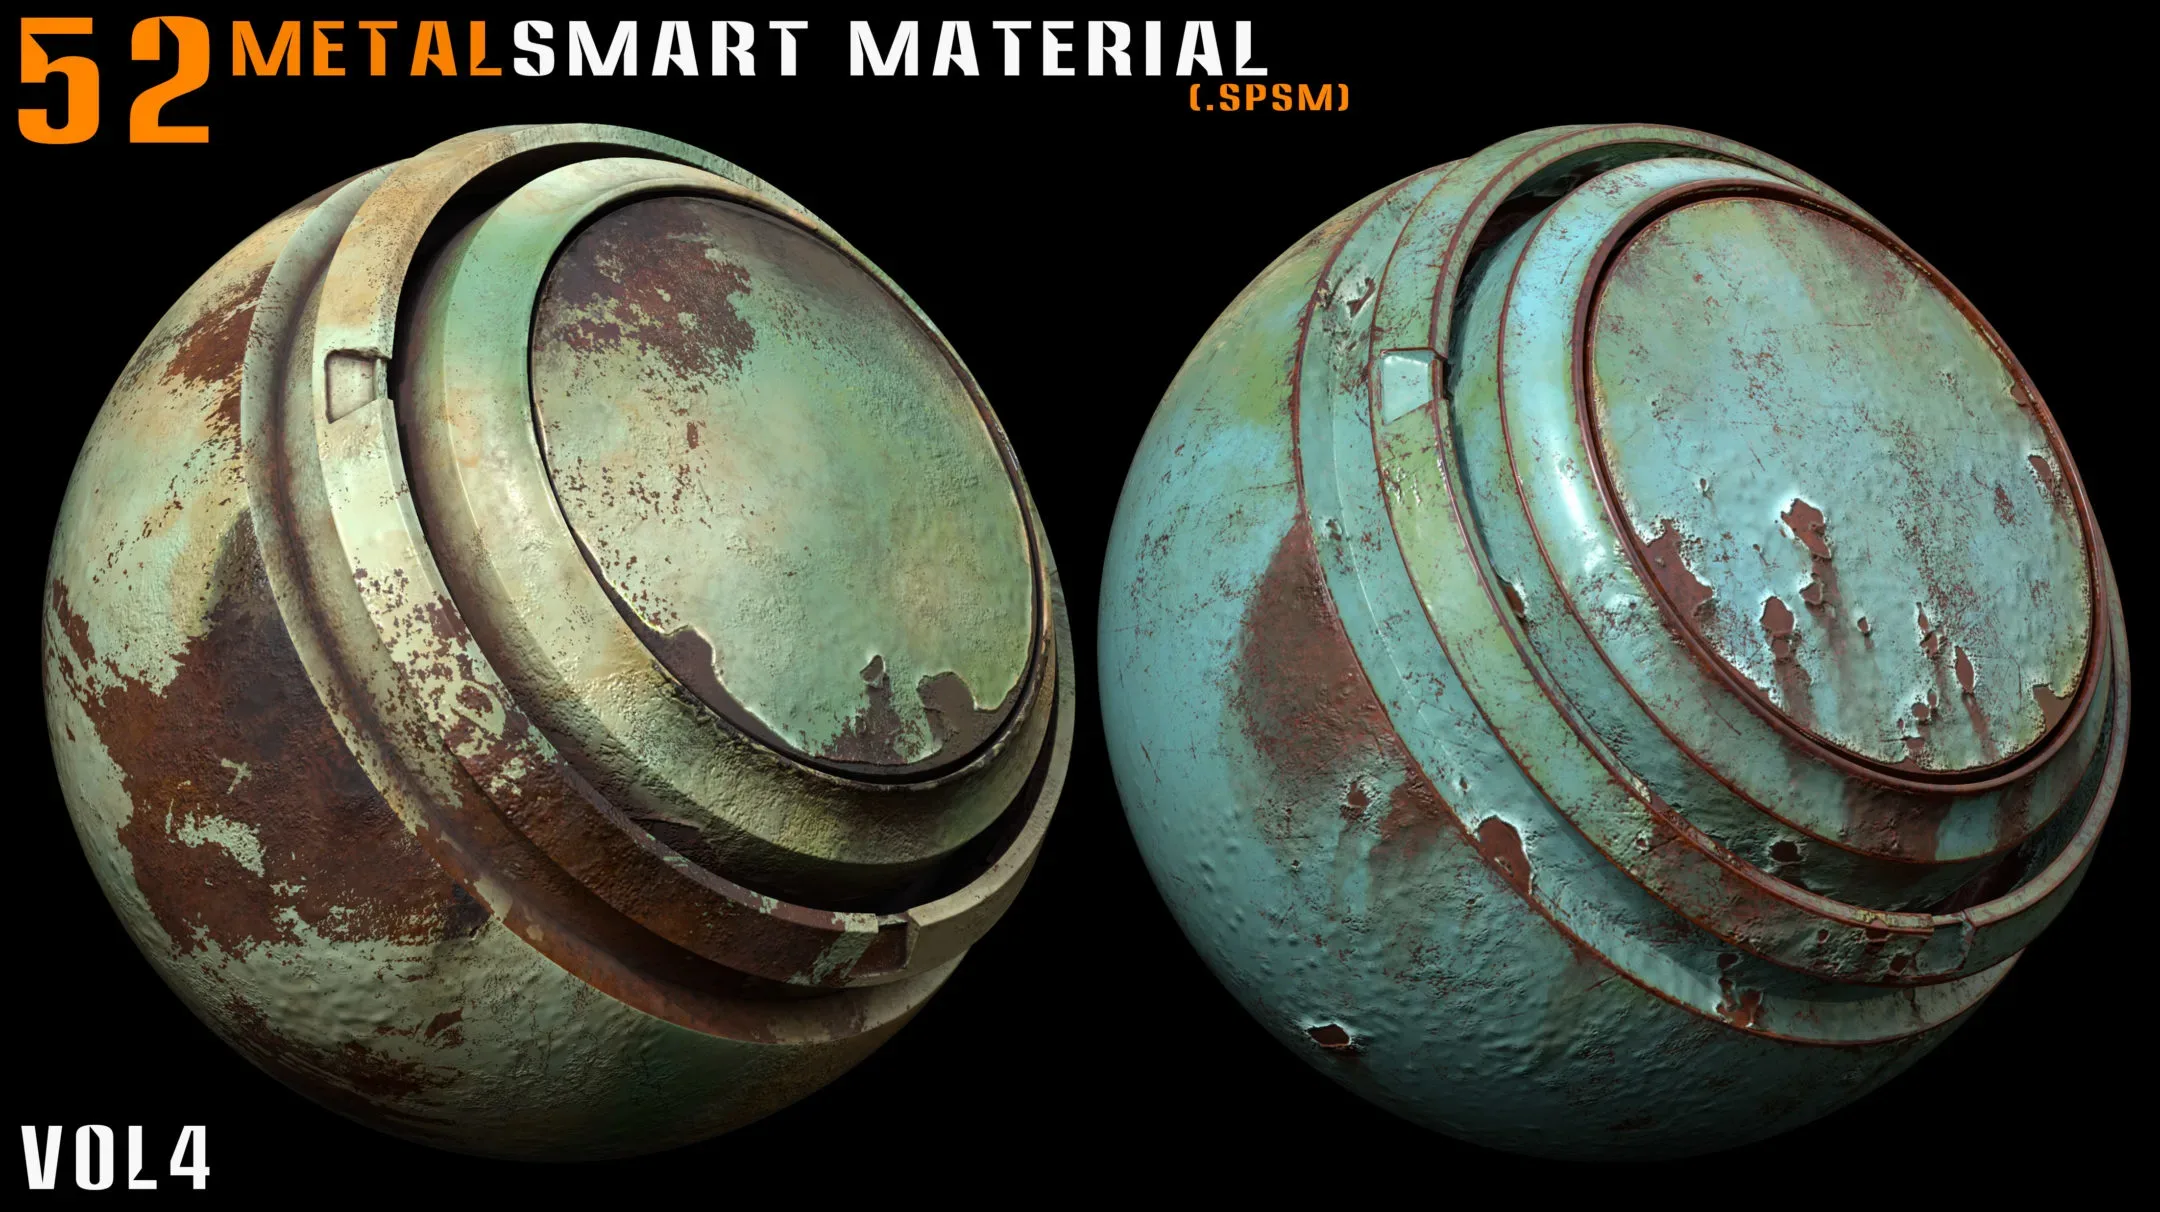 52 metal smart materials - vol 4